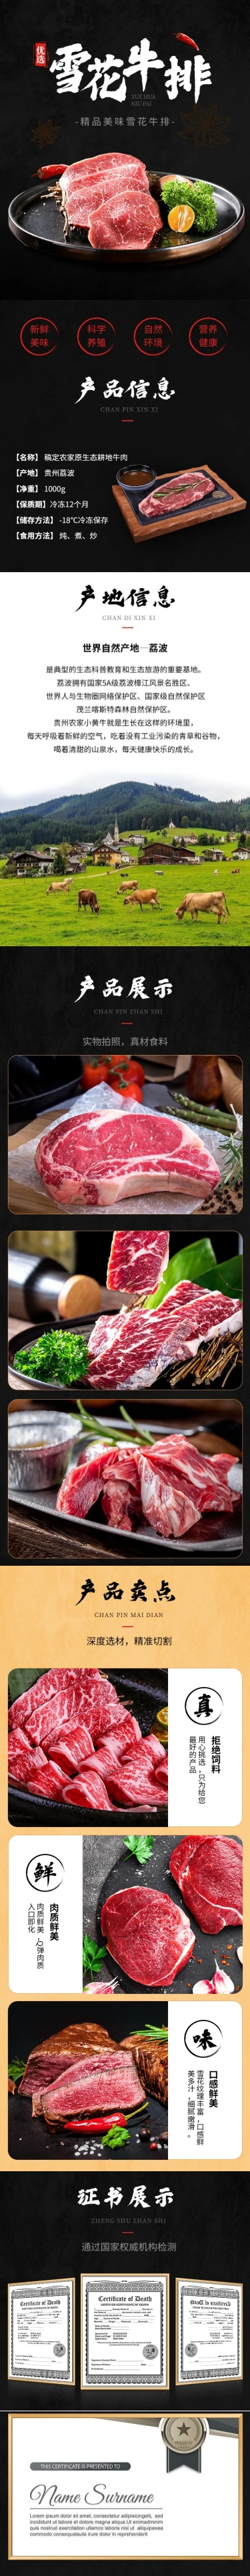 电商食品生鲜肉类牛排详情页预览效果